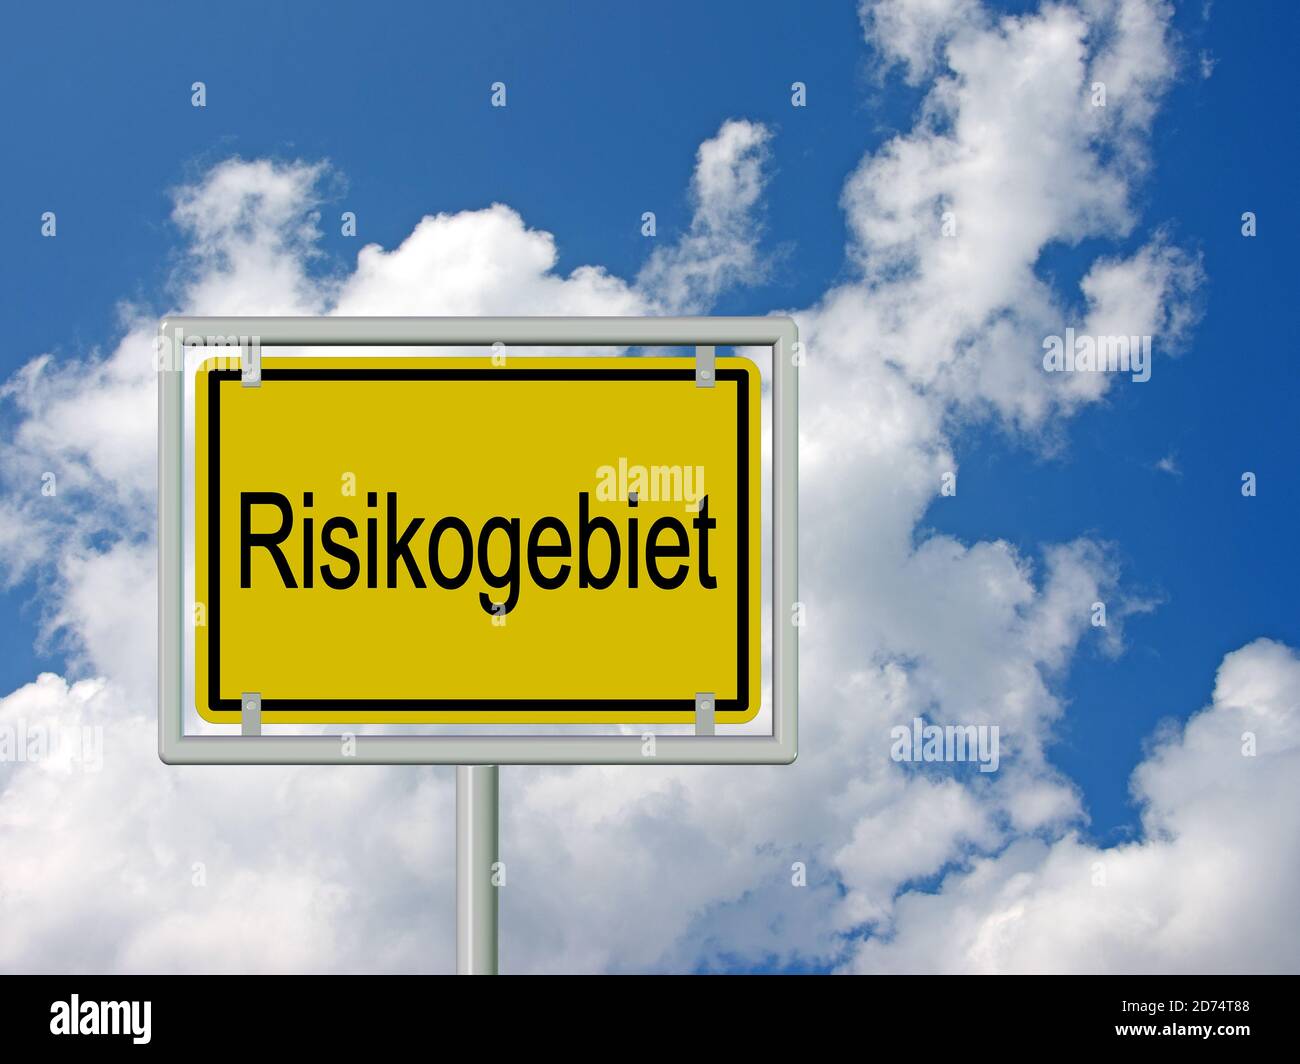 Segno del nome della località con la parola 'Risikogebiet', tradotto 'area di rischio' davanti ad un cielo con le nuvole Foto Stock